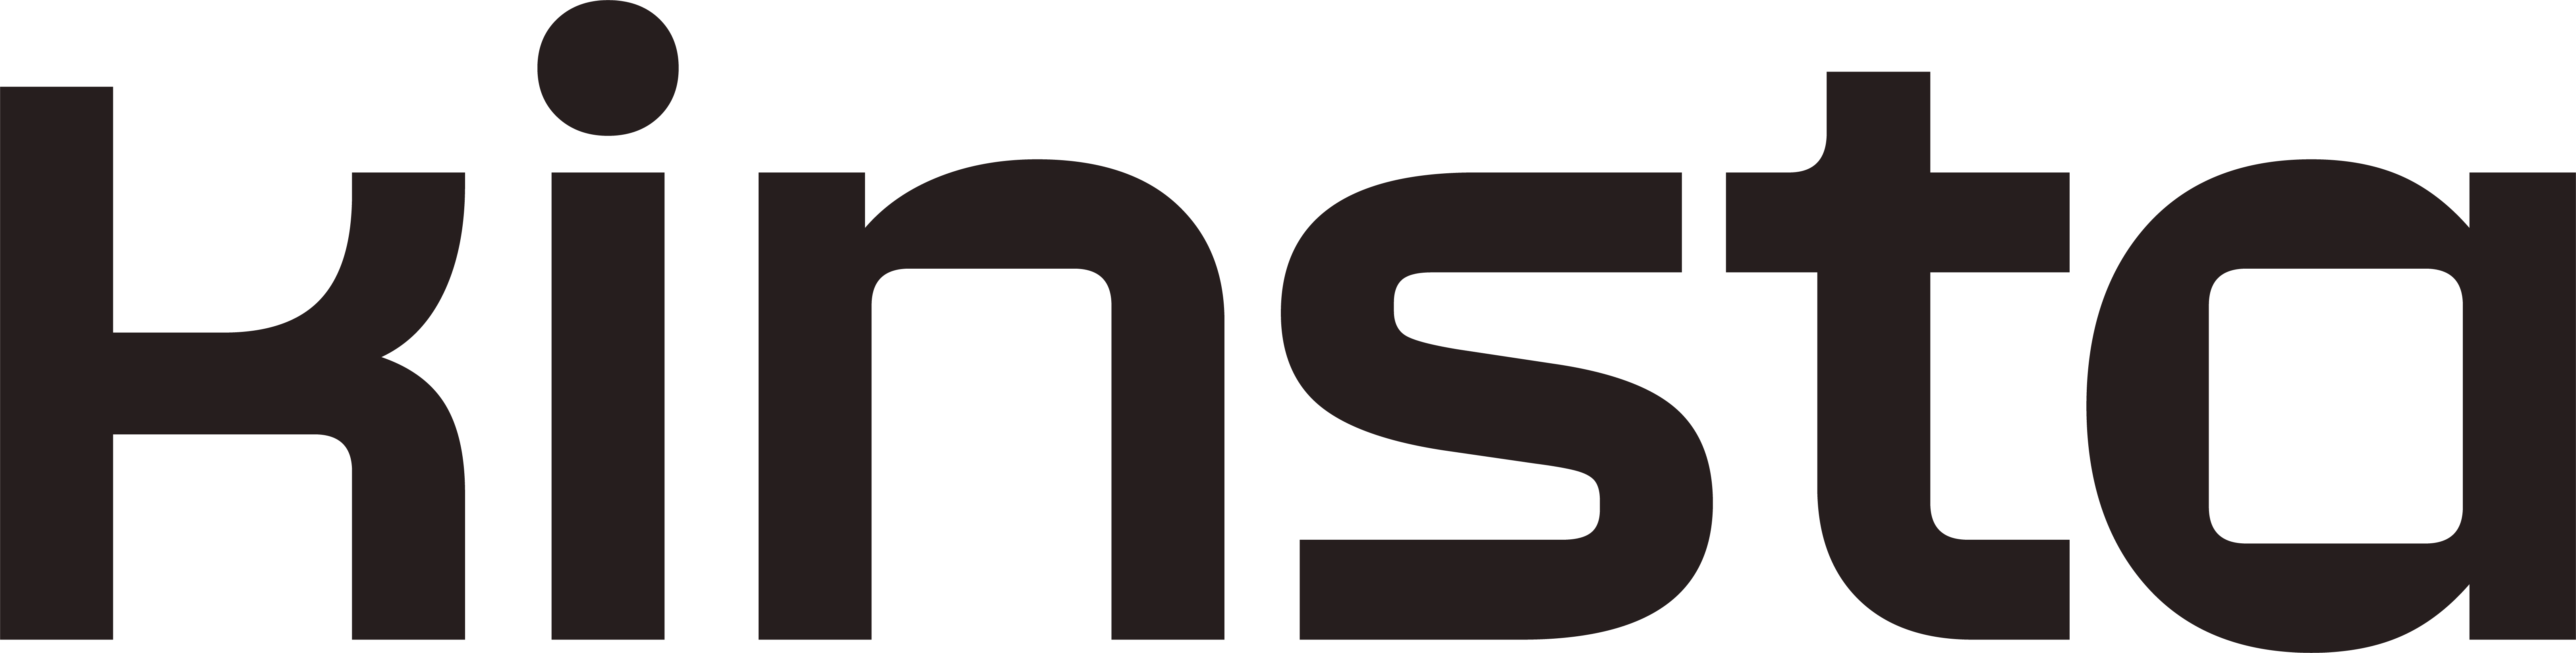 Kinsta logo black on transparent background